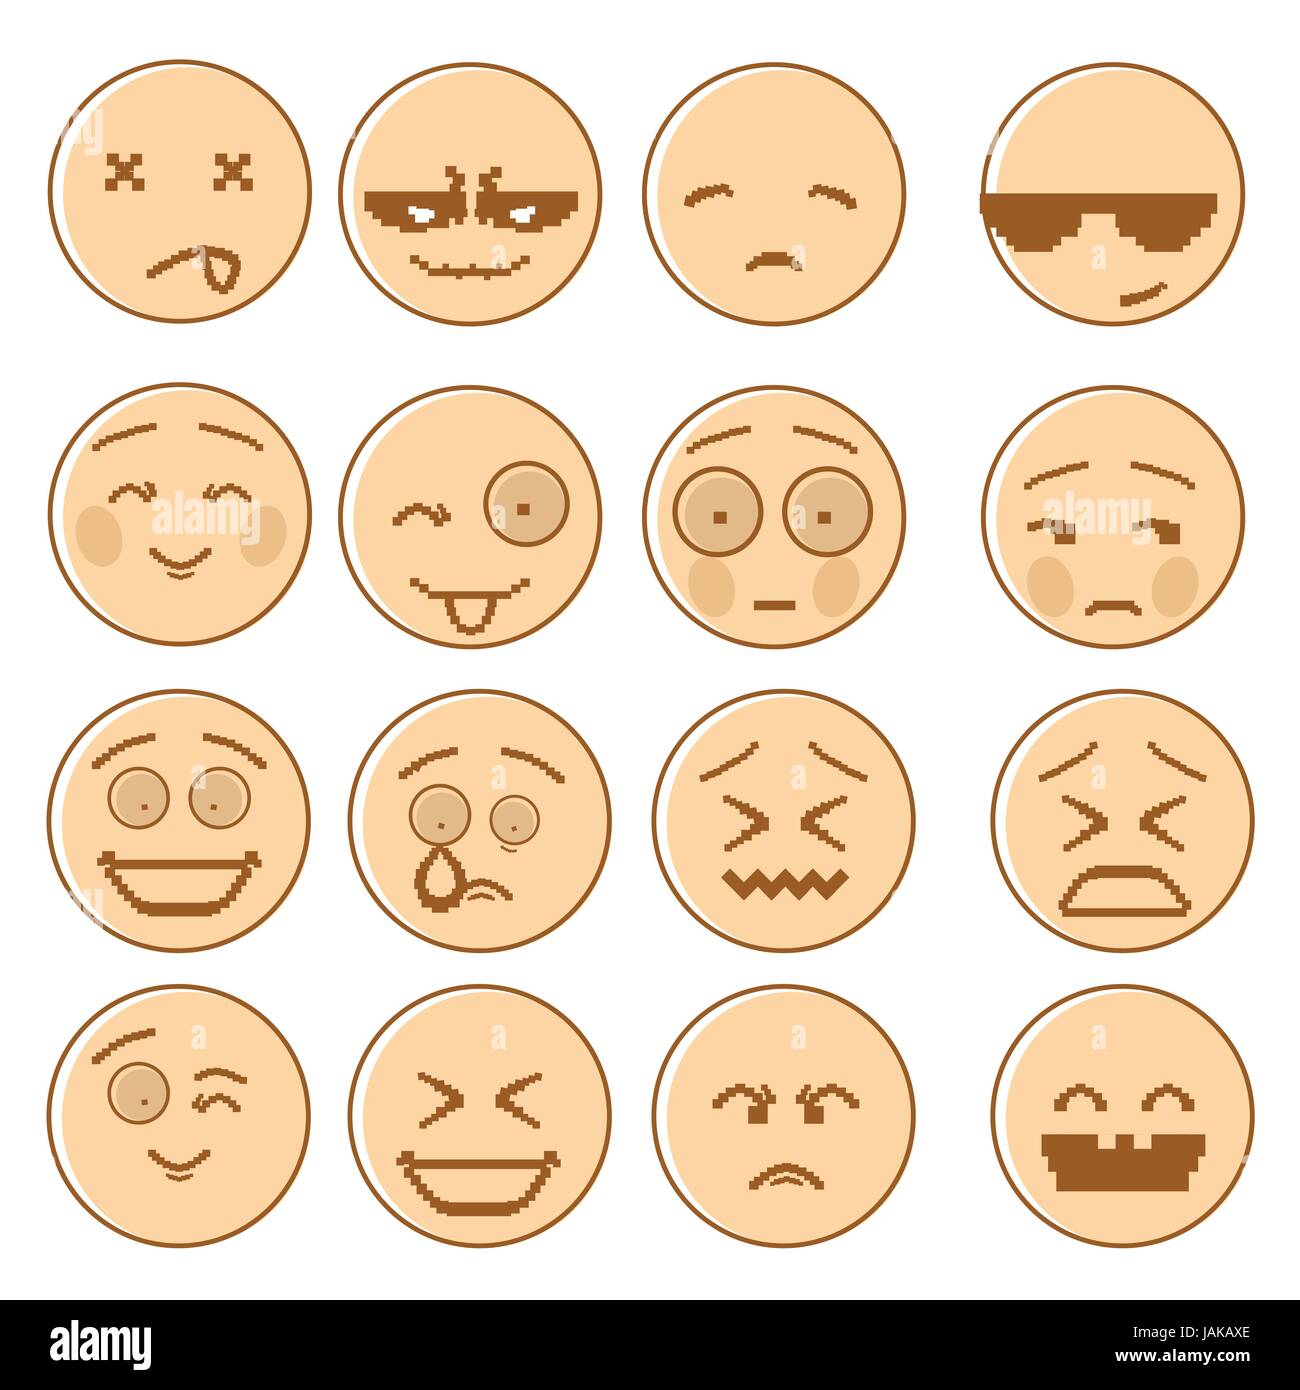 Smiling Portrait dessiné ensemble les gens négatifs et positifs de l'Émotion Icon Collection Illustration de Vecteur